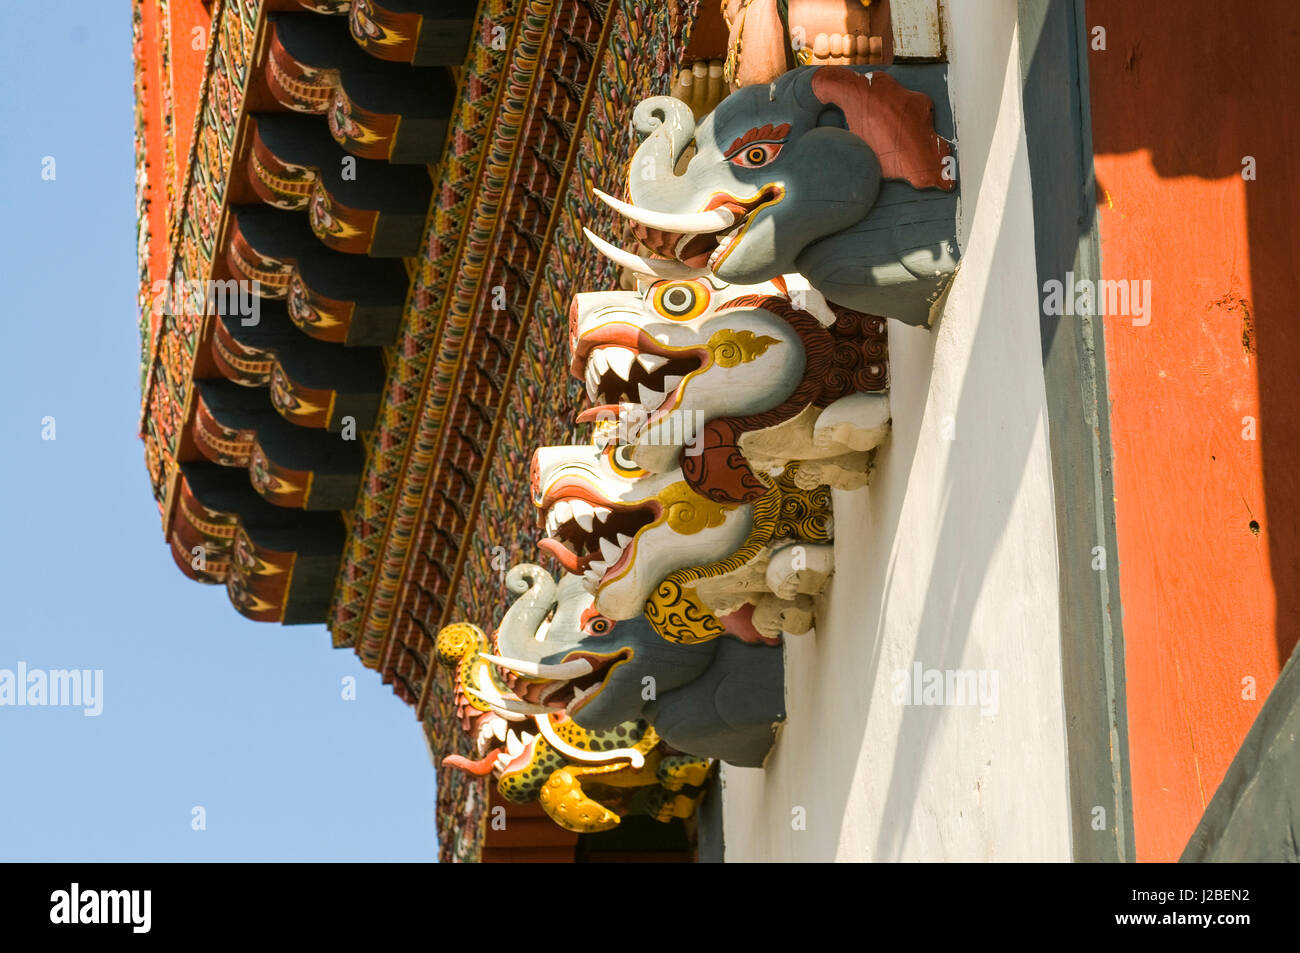 Des têtes d'animaux à des statues de la façade du monastère, Monastère Gangtey Goempa, Bhoutan Banque D'Images